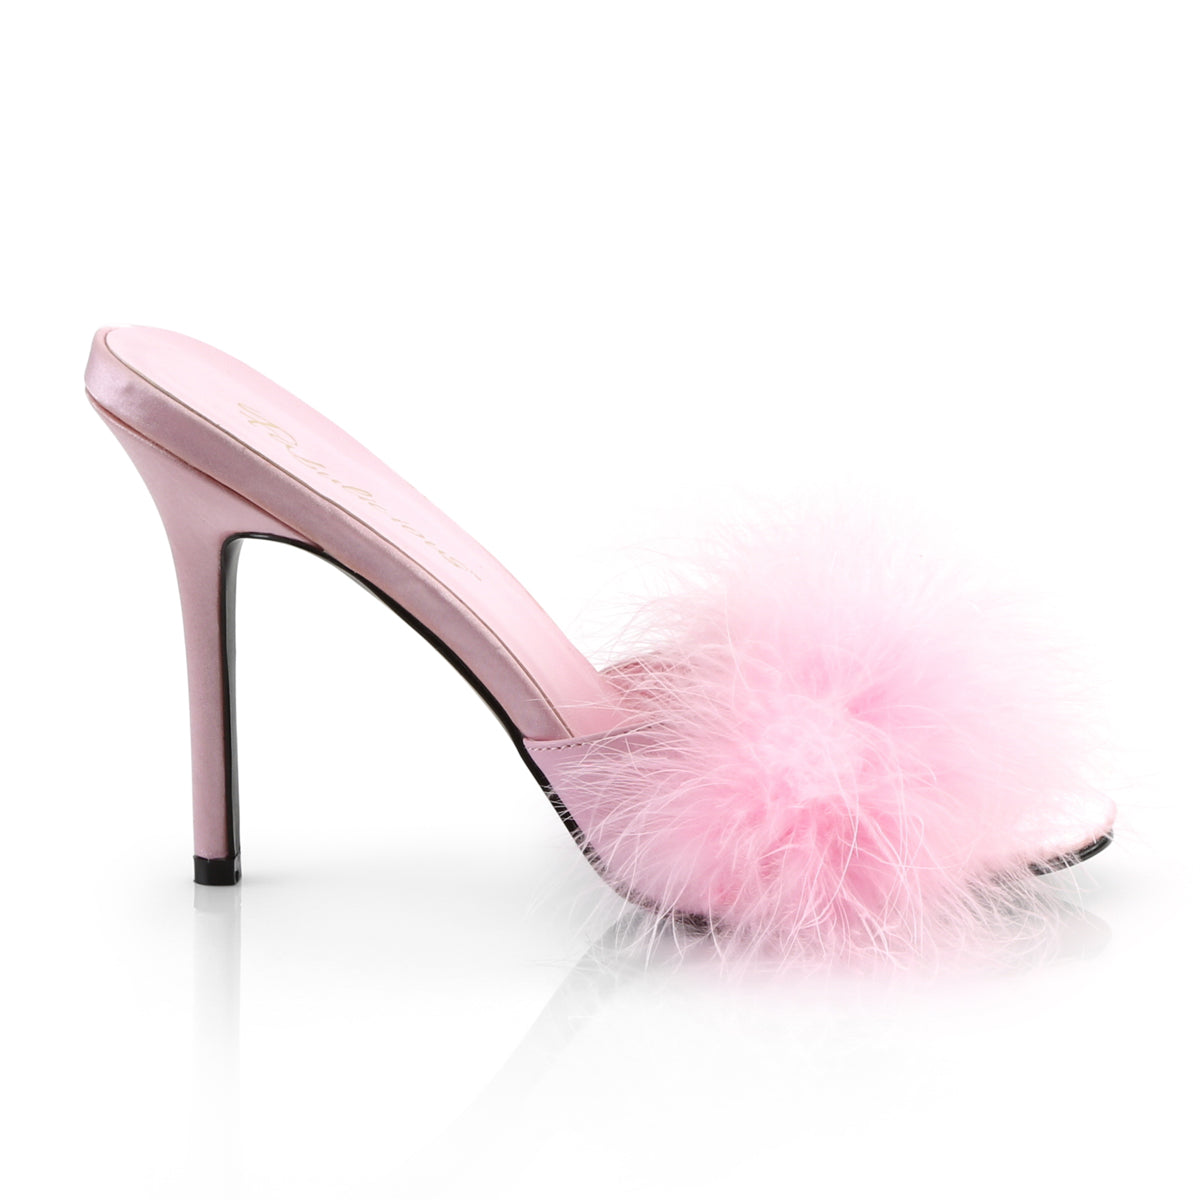 CLASSIQUE-01F Fabulicious 4" Heel Pink Bedroom Sexy Shoes-Fabulicious- Sexy Shoes Fetish Heels